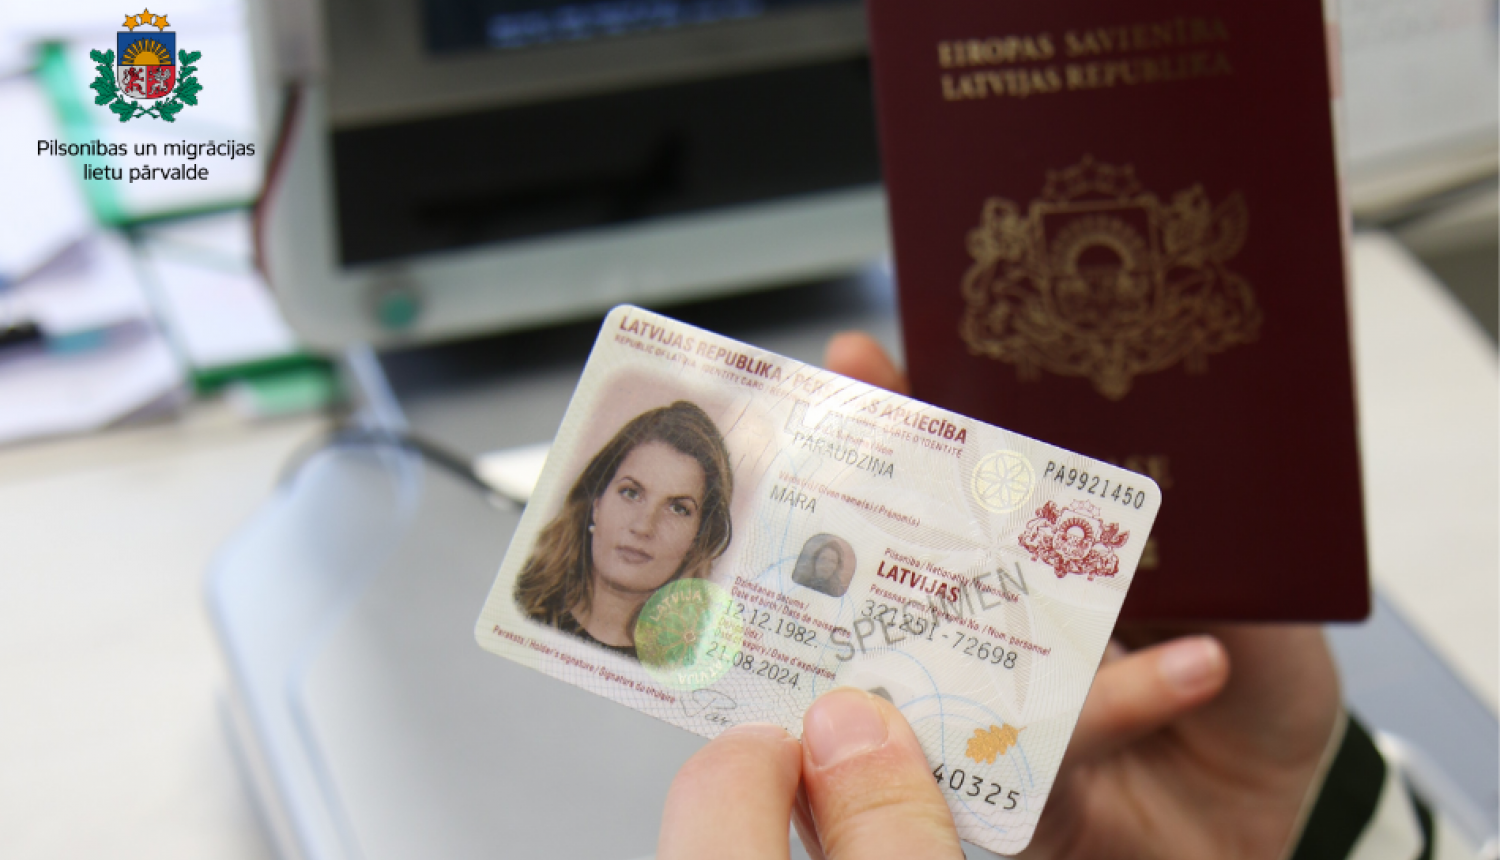 Latvia introduces eID card for foreigners  Pilsonības un migrācijas lietu  pārvalde